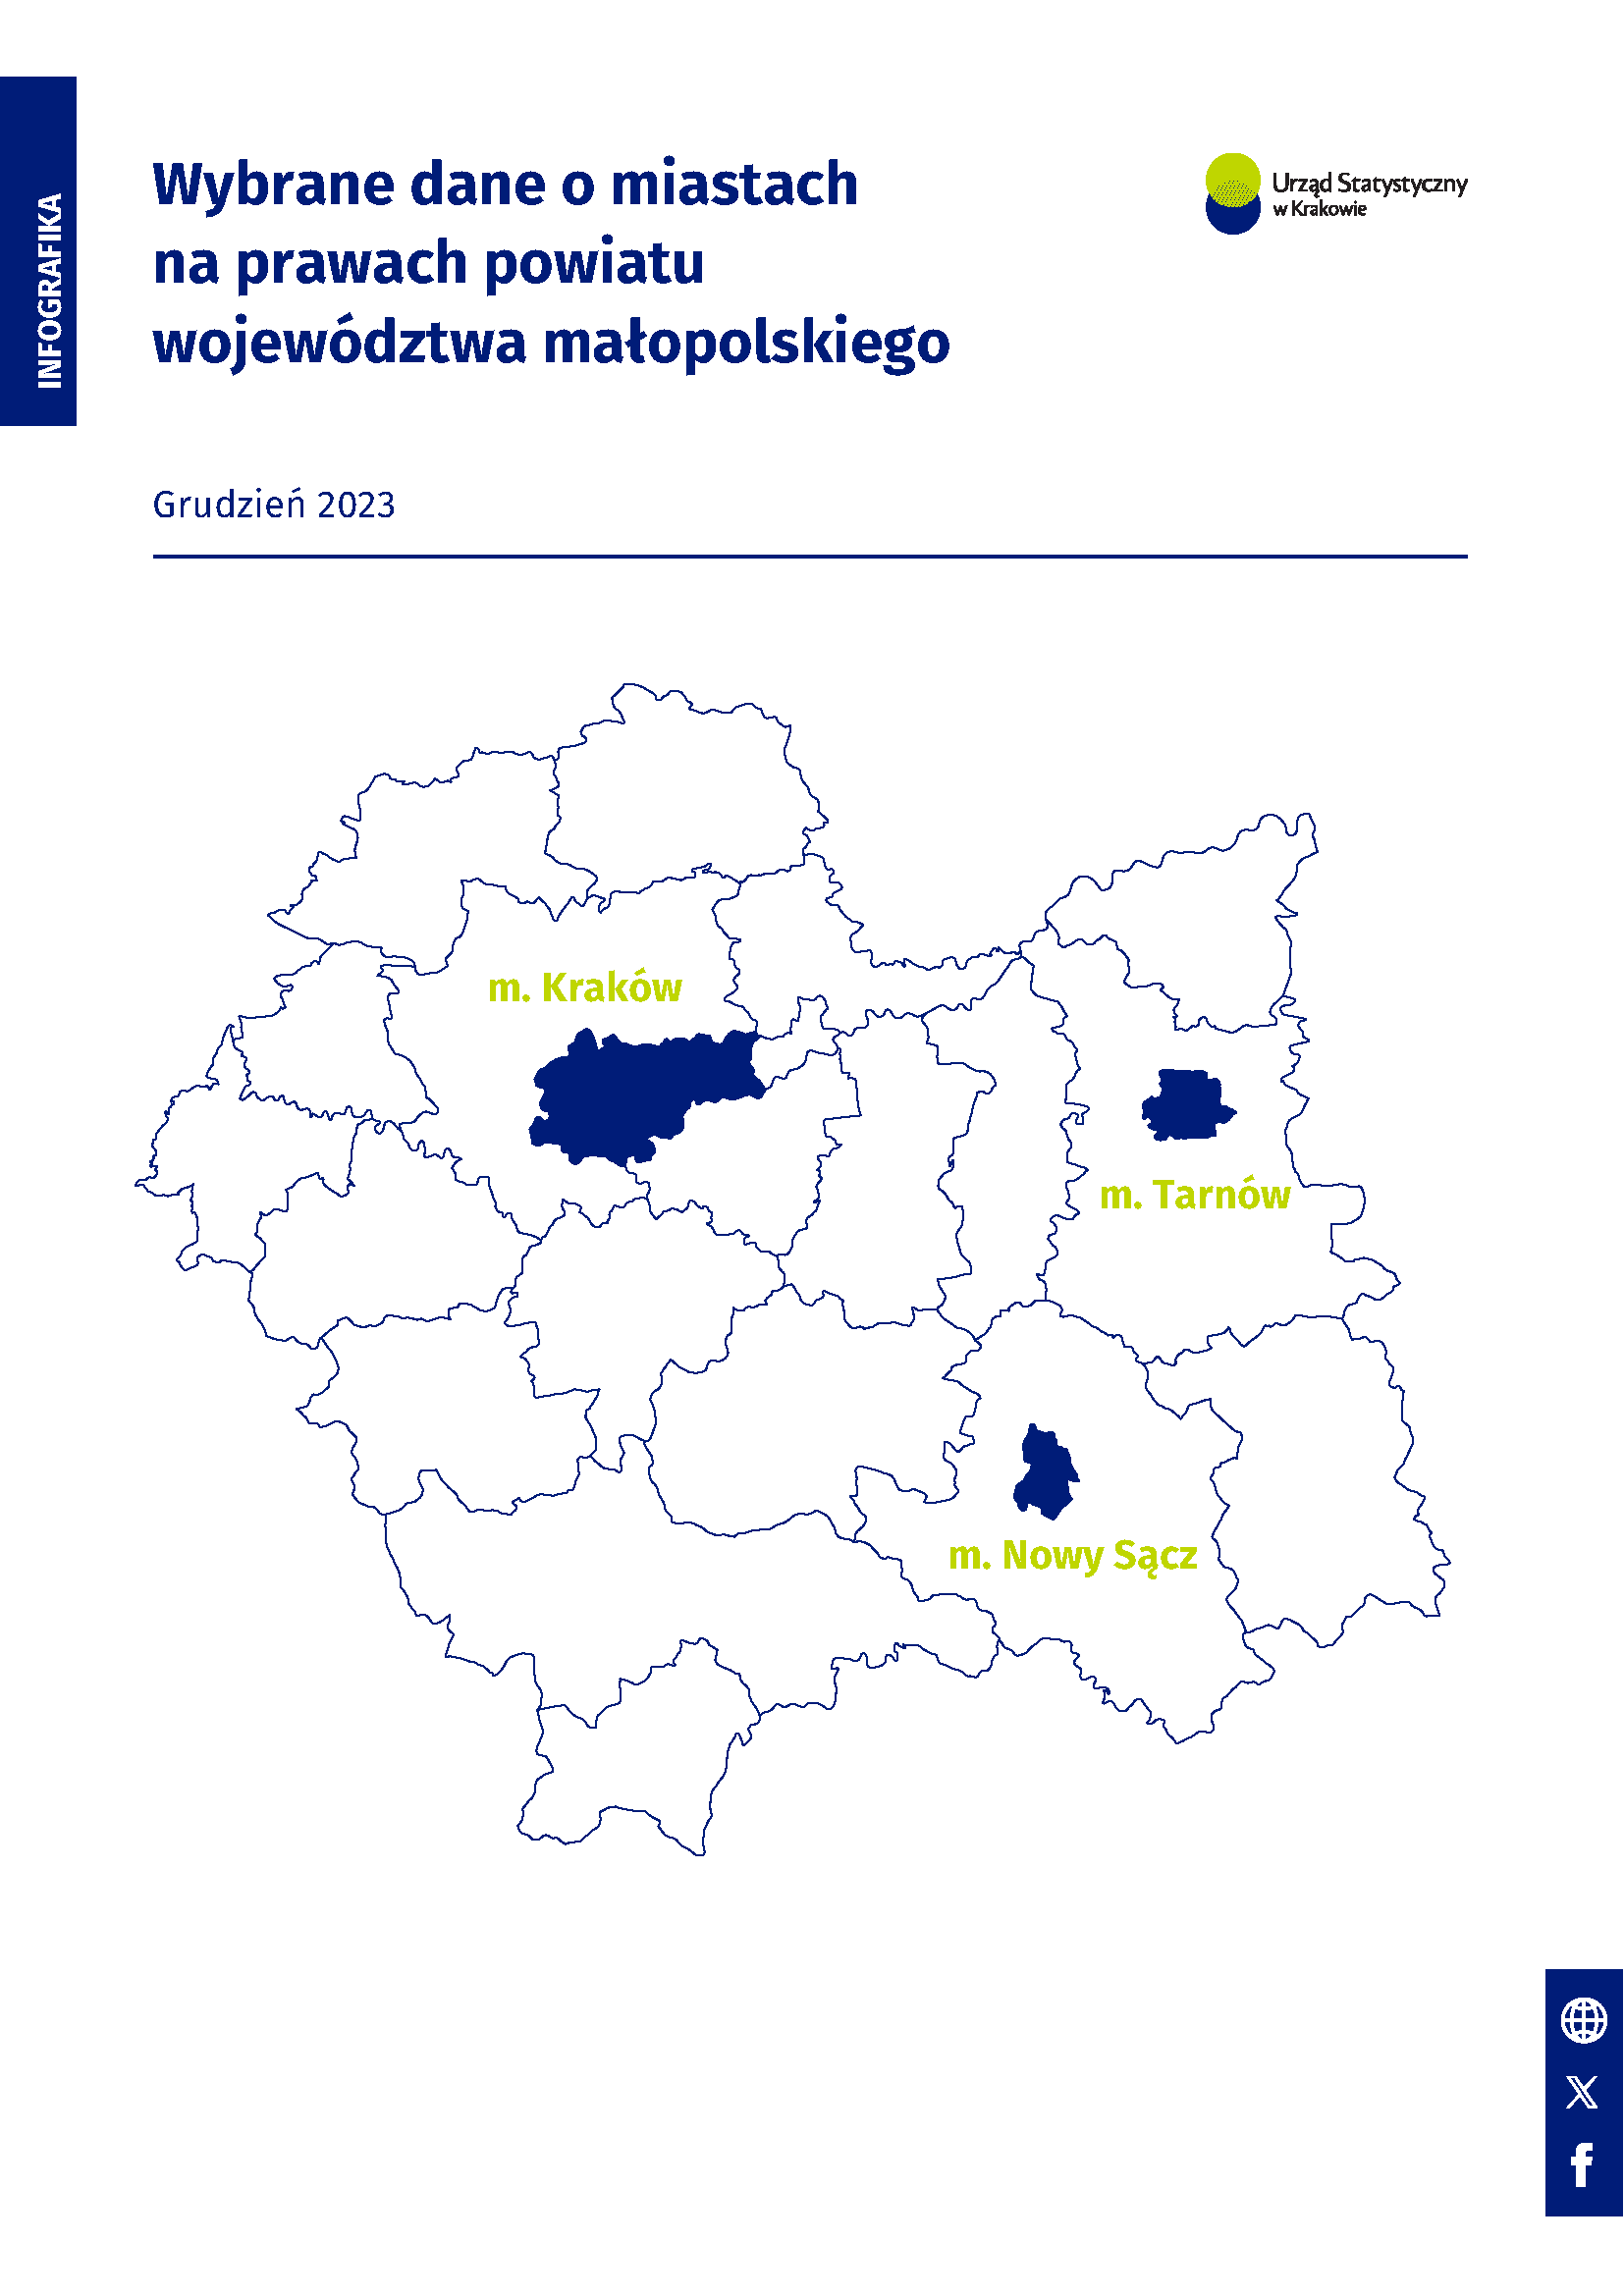 Infografika Wybrane dane o miastach na prawach powiatu województwa małopolskiego - grudzień 2023